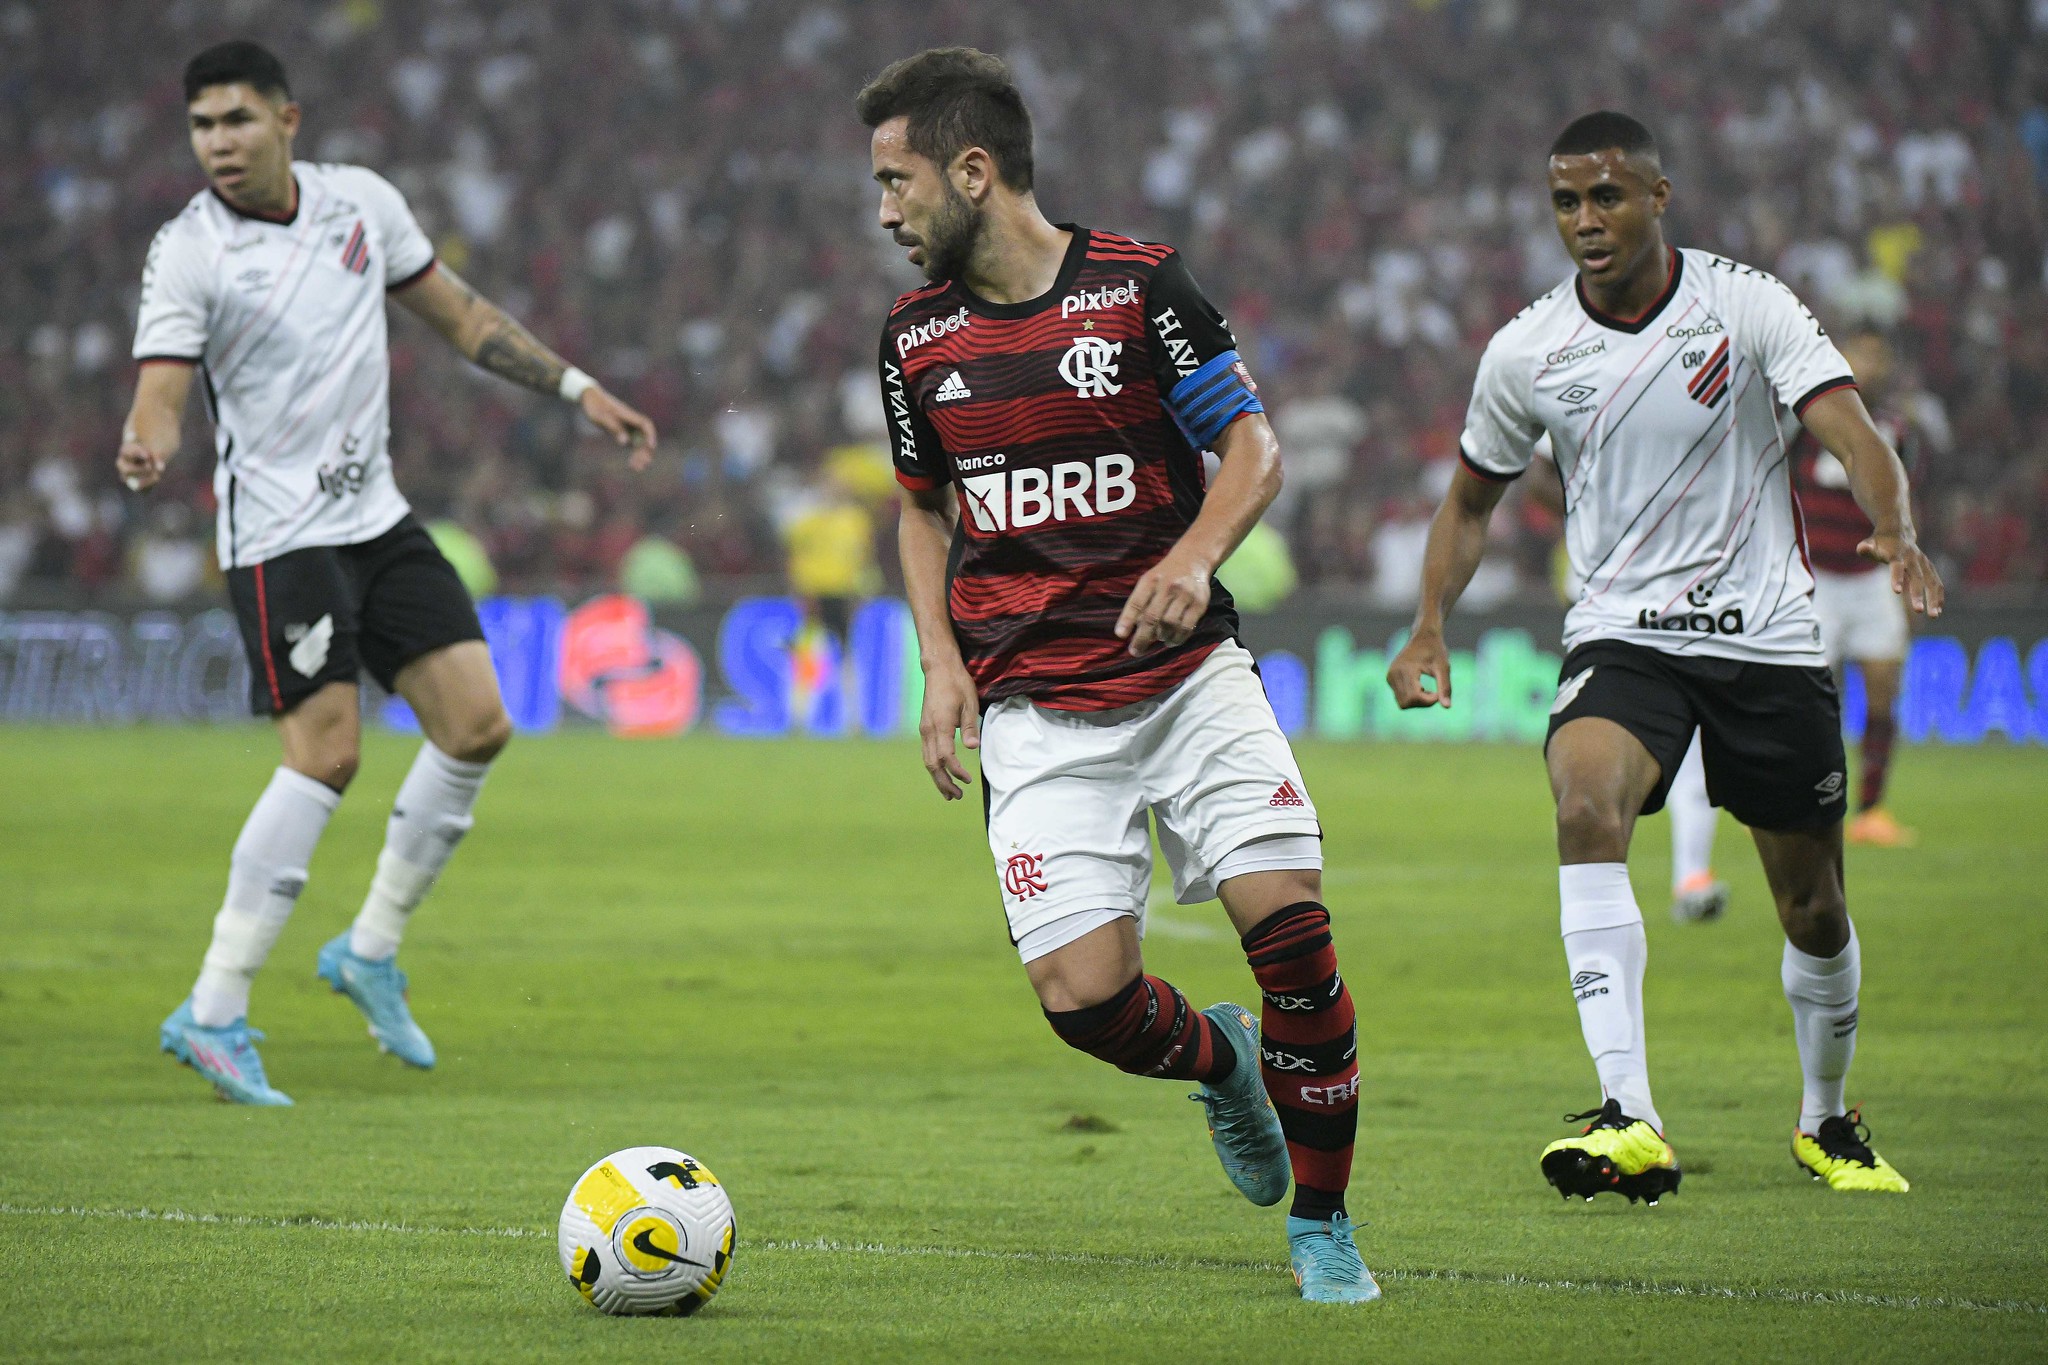 Análise ENM: Flamengo é melhor nos 90 minutos, mas não consegue furar a defesa do Athletico